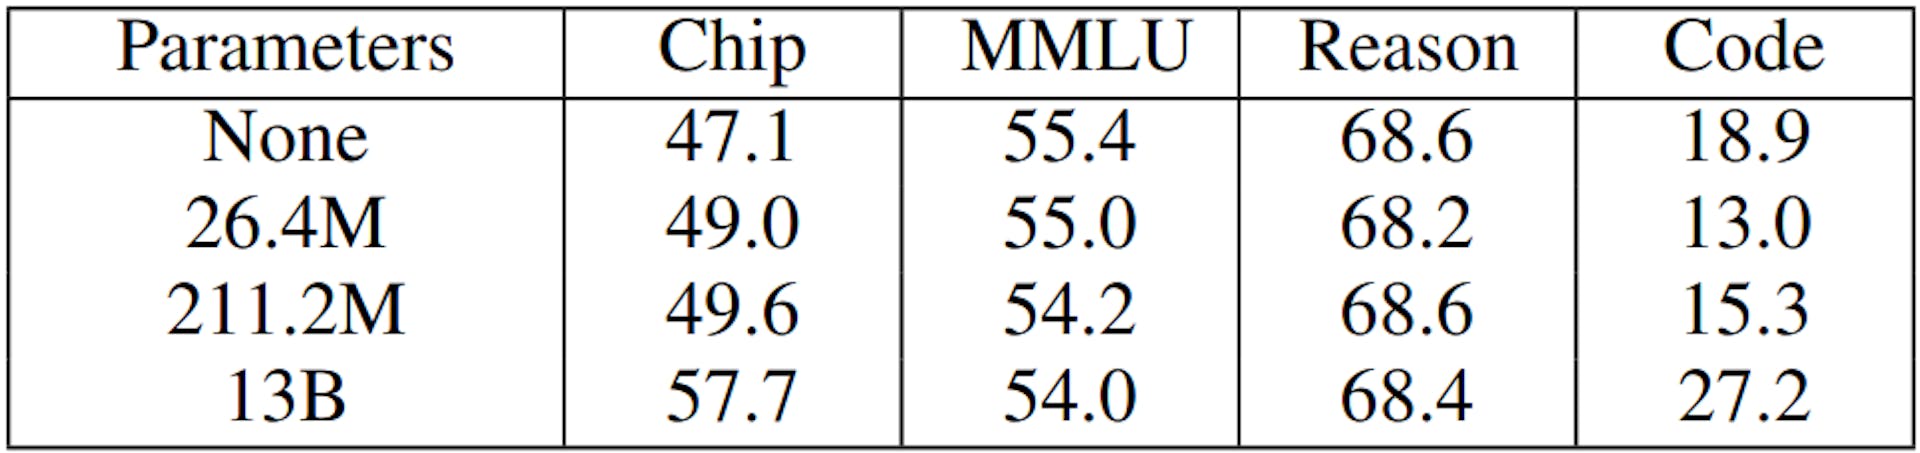 TABLO XIII: LoRA Modellerine İlişkin Değerlendirme Sonuçları. İlk sütun eğitilebilir parametrelerin sayısını gösterir. Hiçbiri, DAPT'siz LLaMA2-13B modelini belirtir. 13B tam parametre eğitimini gösterir.